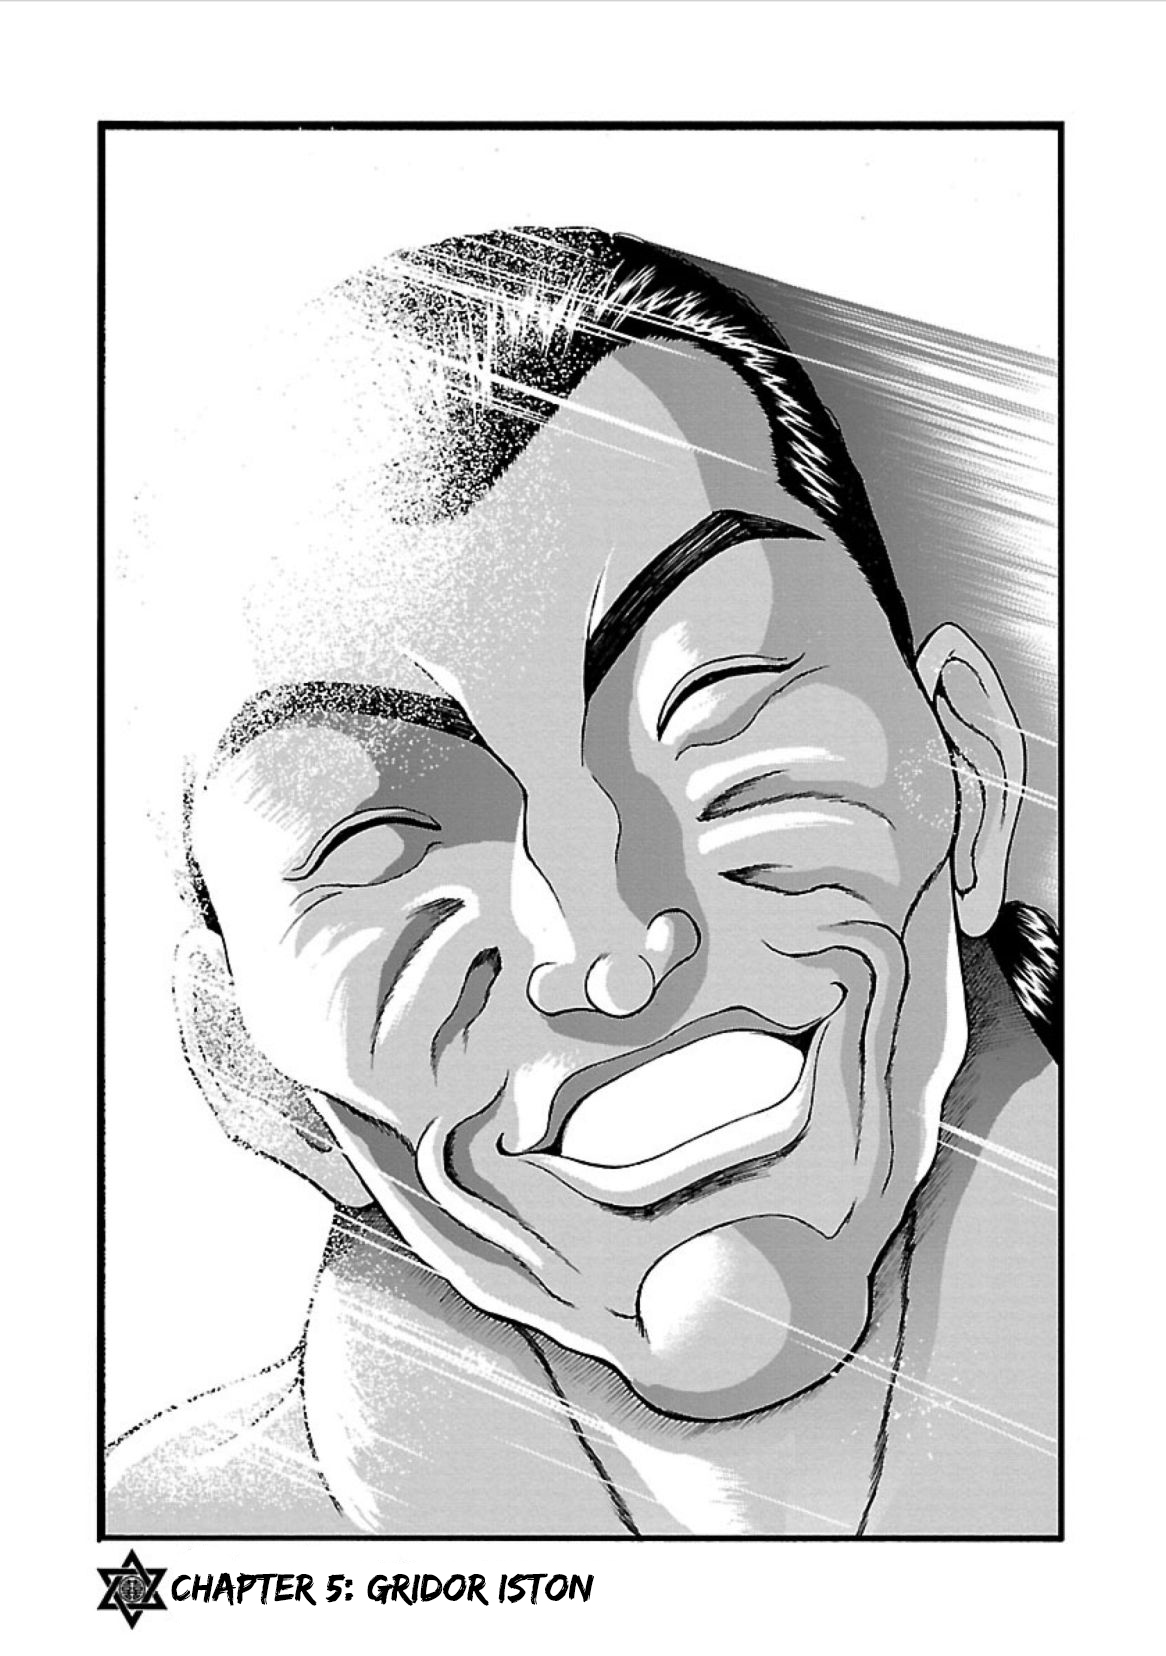 Baki Gaiden - Retsu Kaioh Isekai Tensei Shitemo Ikkō Kamawan! Vol.1 Chapter 5: Gridor Iston - Picture 1